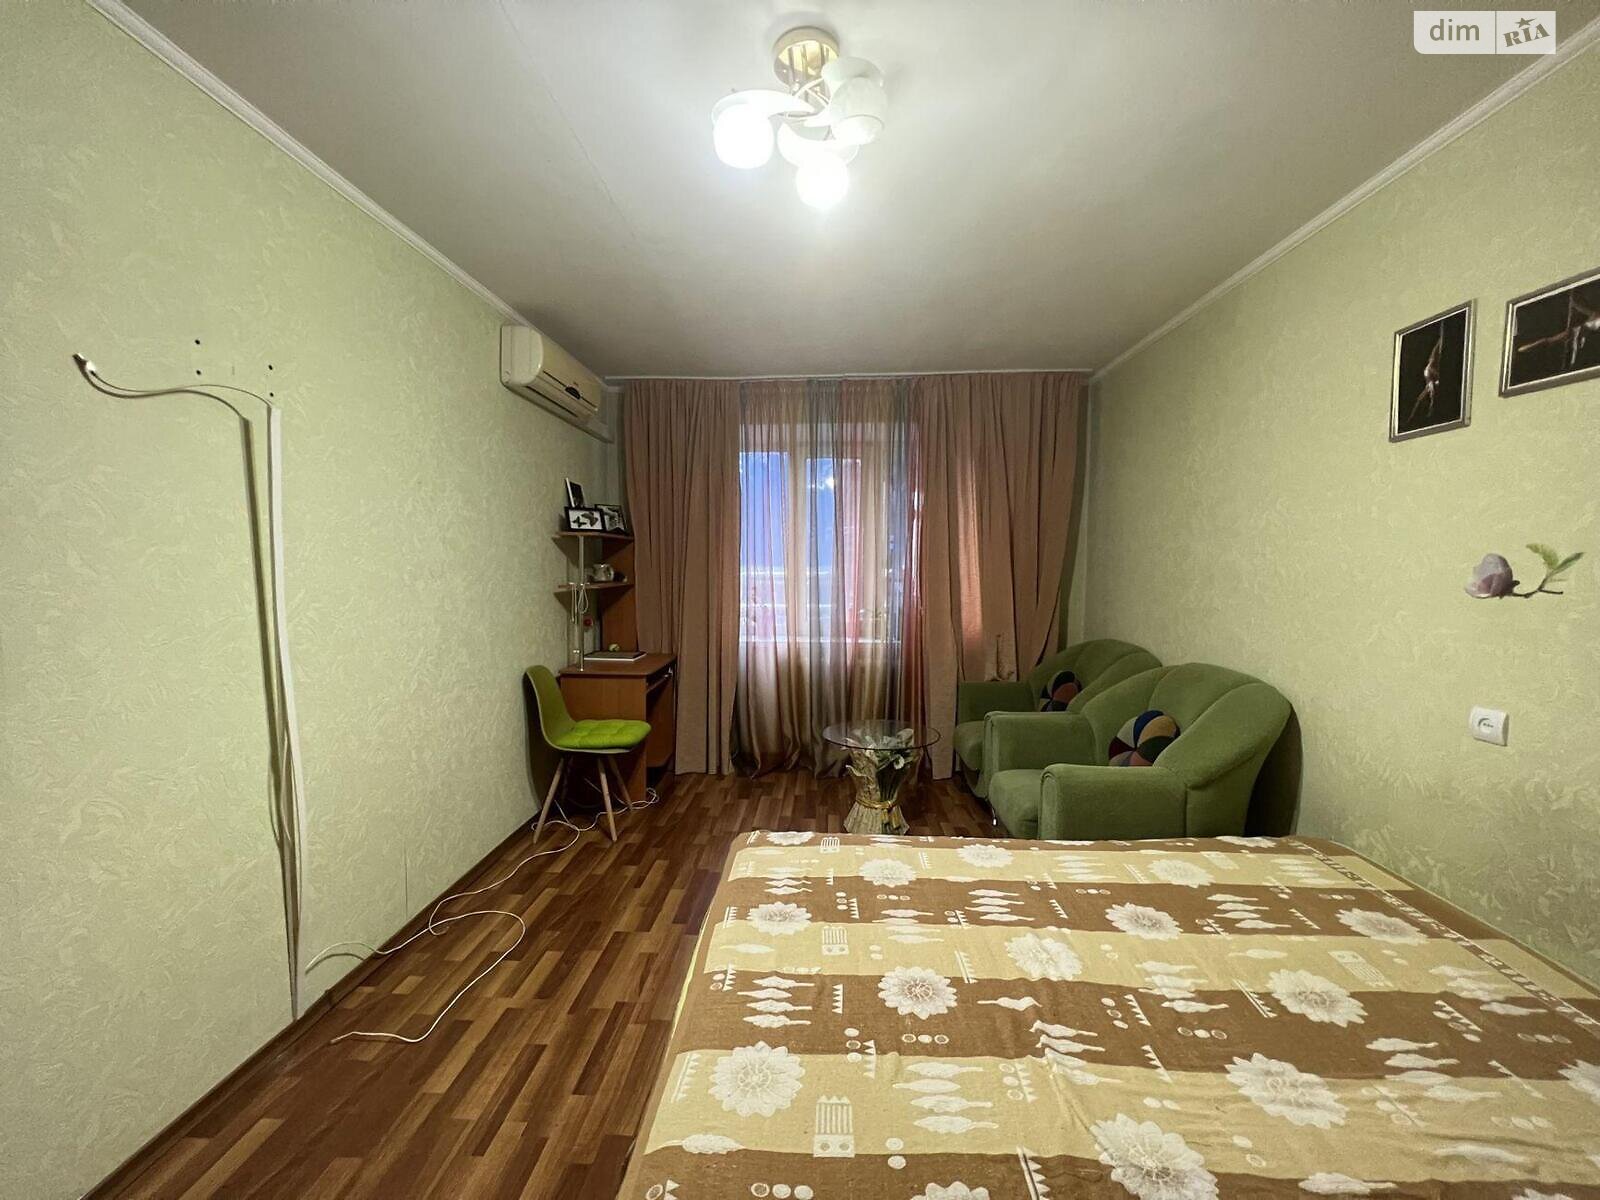 Комната в Харькове, на ул. Краснодарская 171В в районе 627-ой микрорайон на продажу фото 1